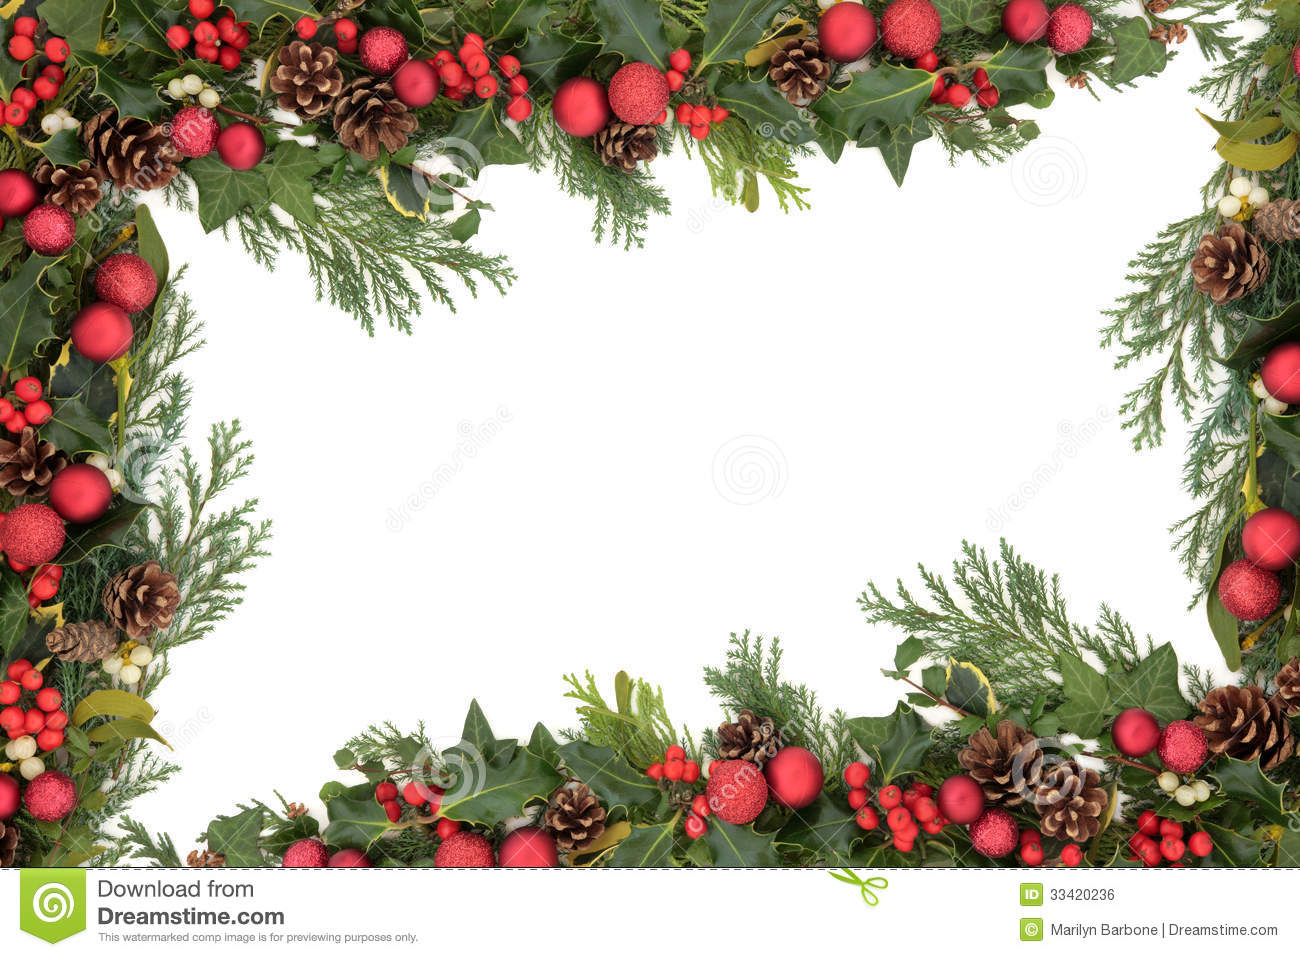 Christmas Decorative Border Royalty Free Stock Image   Image  33420236